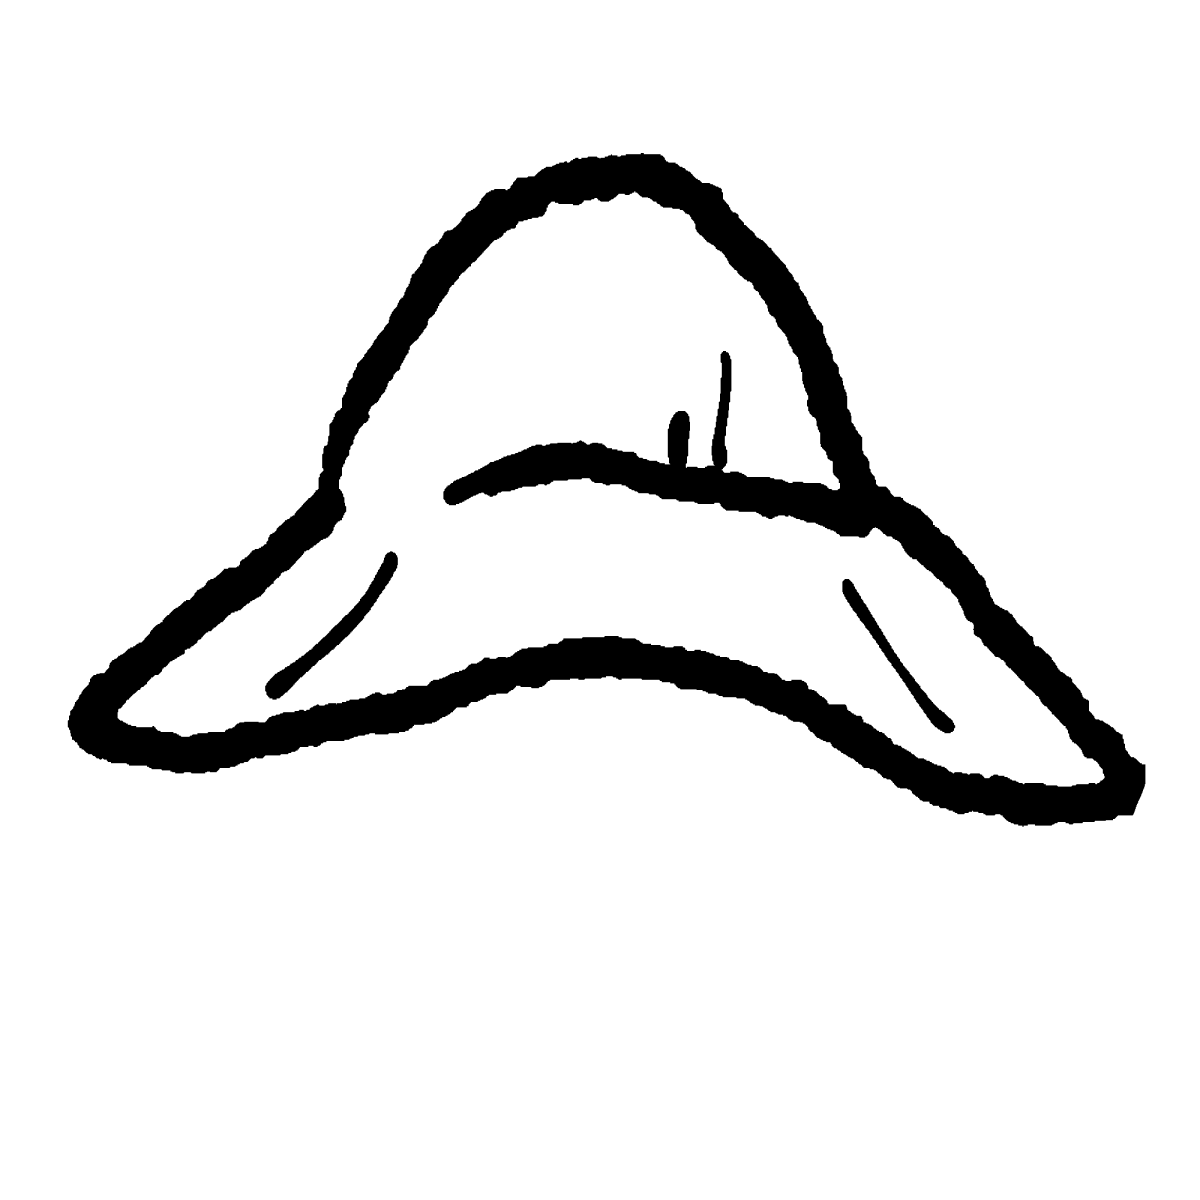 帽子（バケットハット）のイラスト / Hat (bucket hat) Illustration